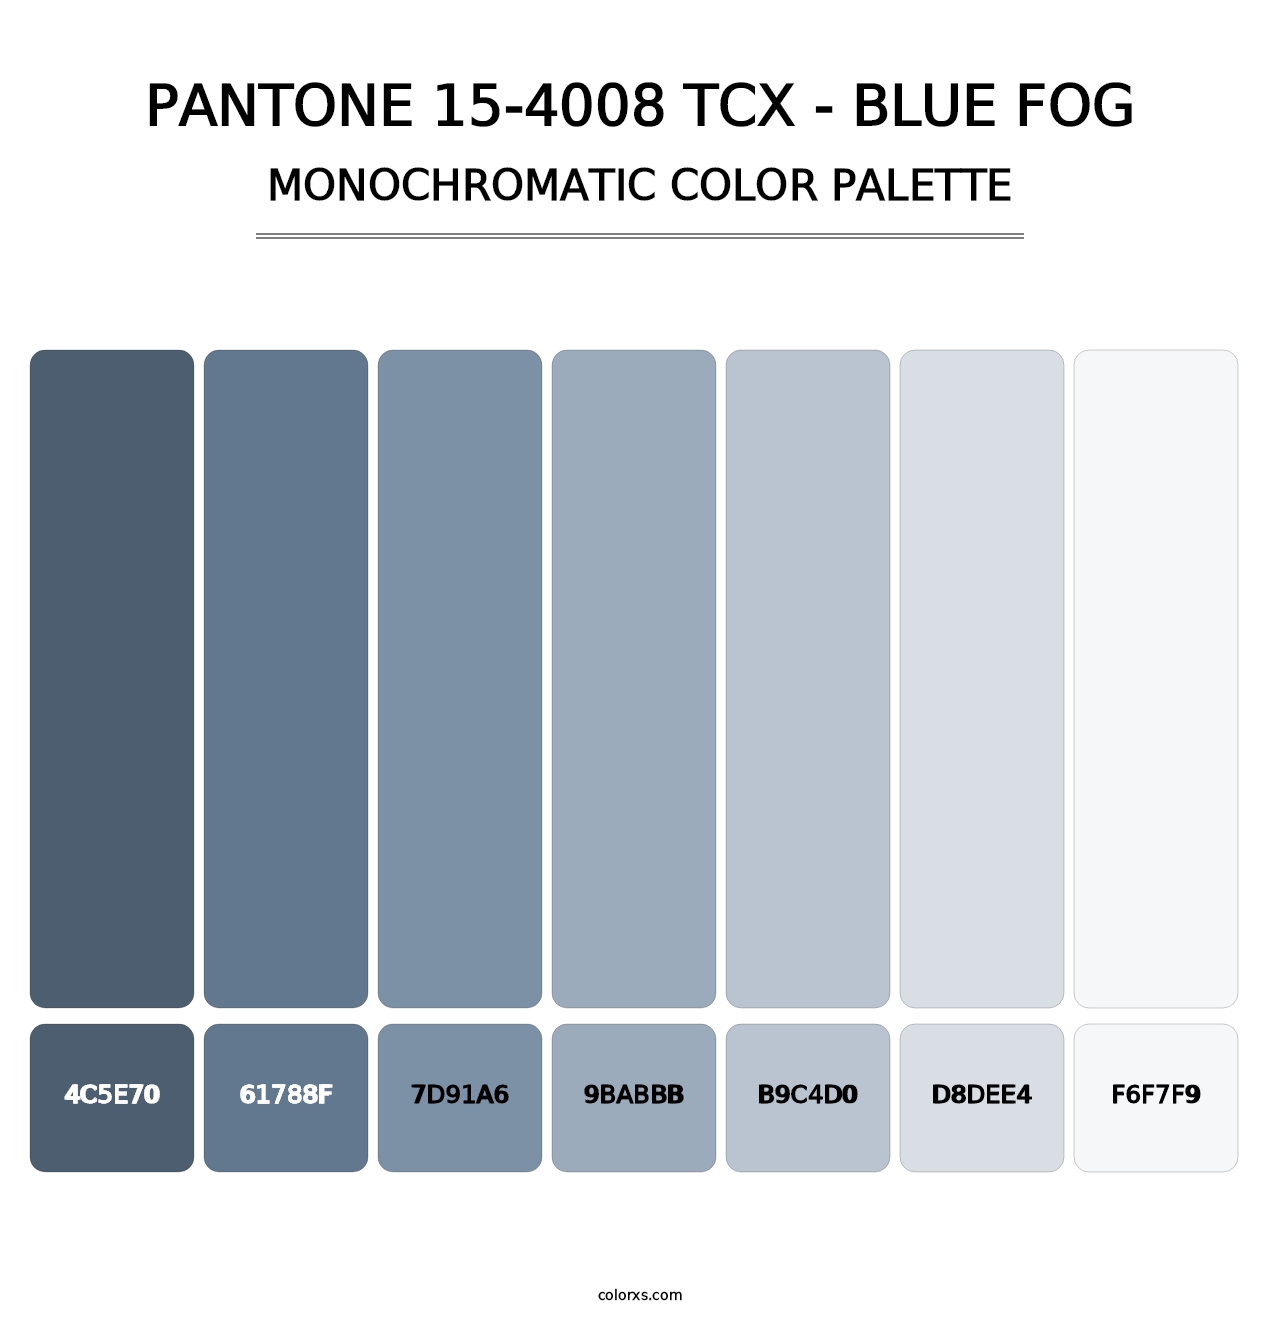 PANTONE 15-4008 TCX - Blue Fog - Monochromatic Color Palette